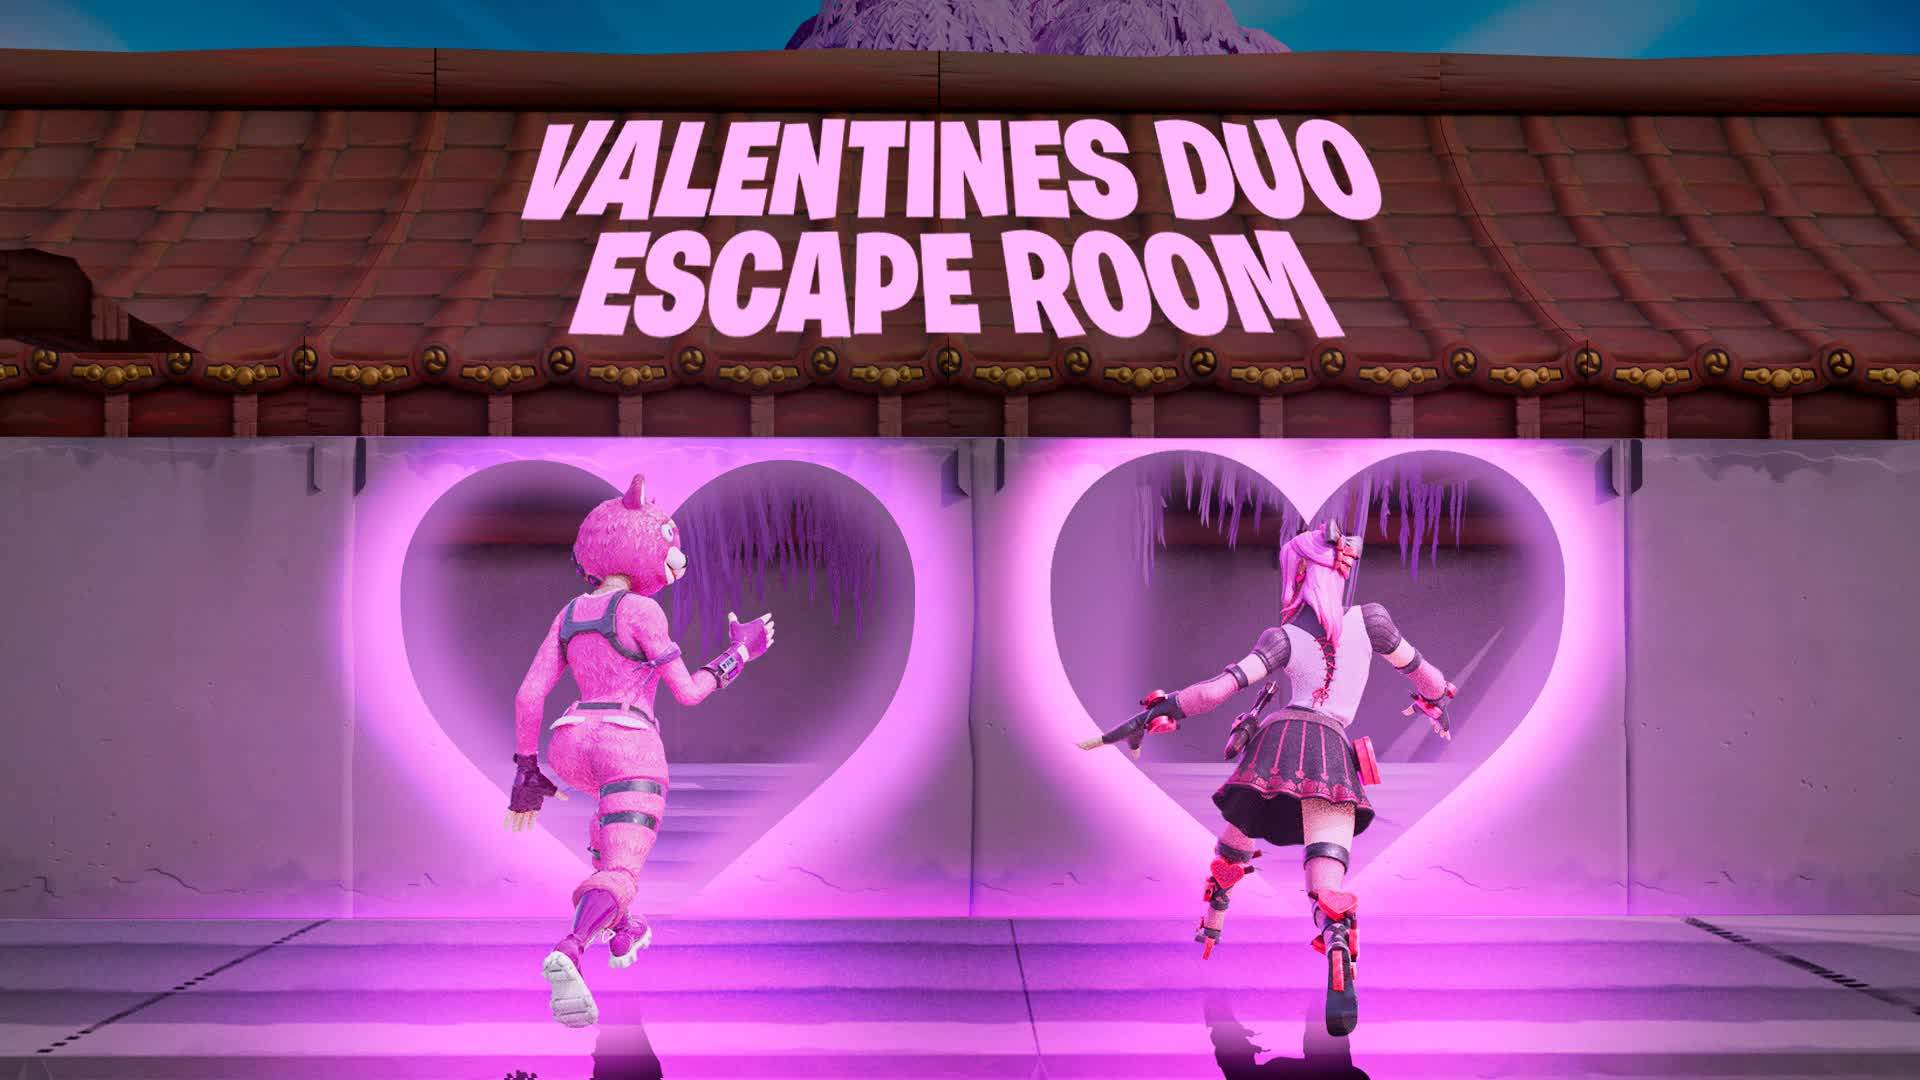 💕Valentine duo escape room 💕